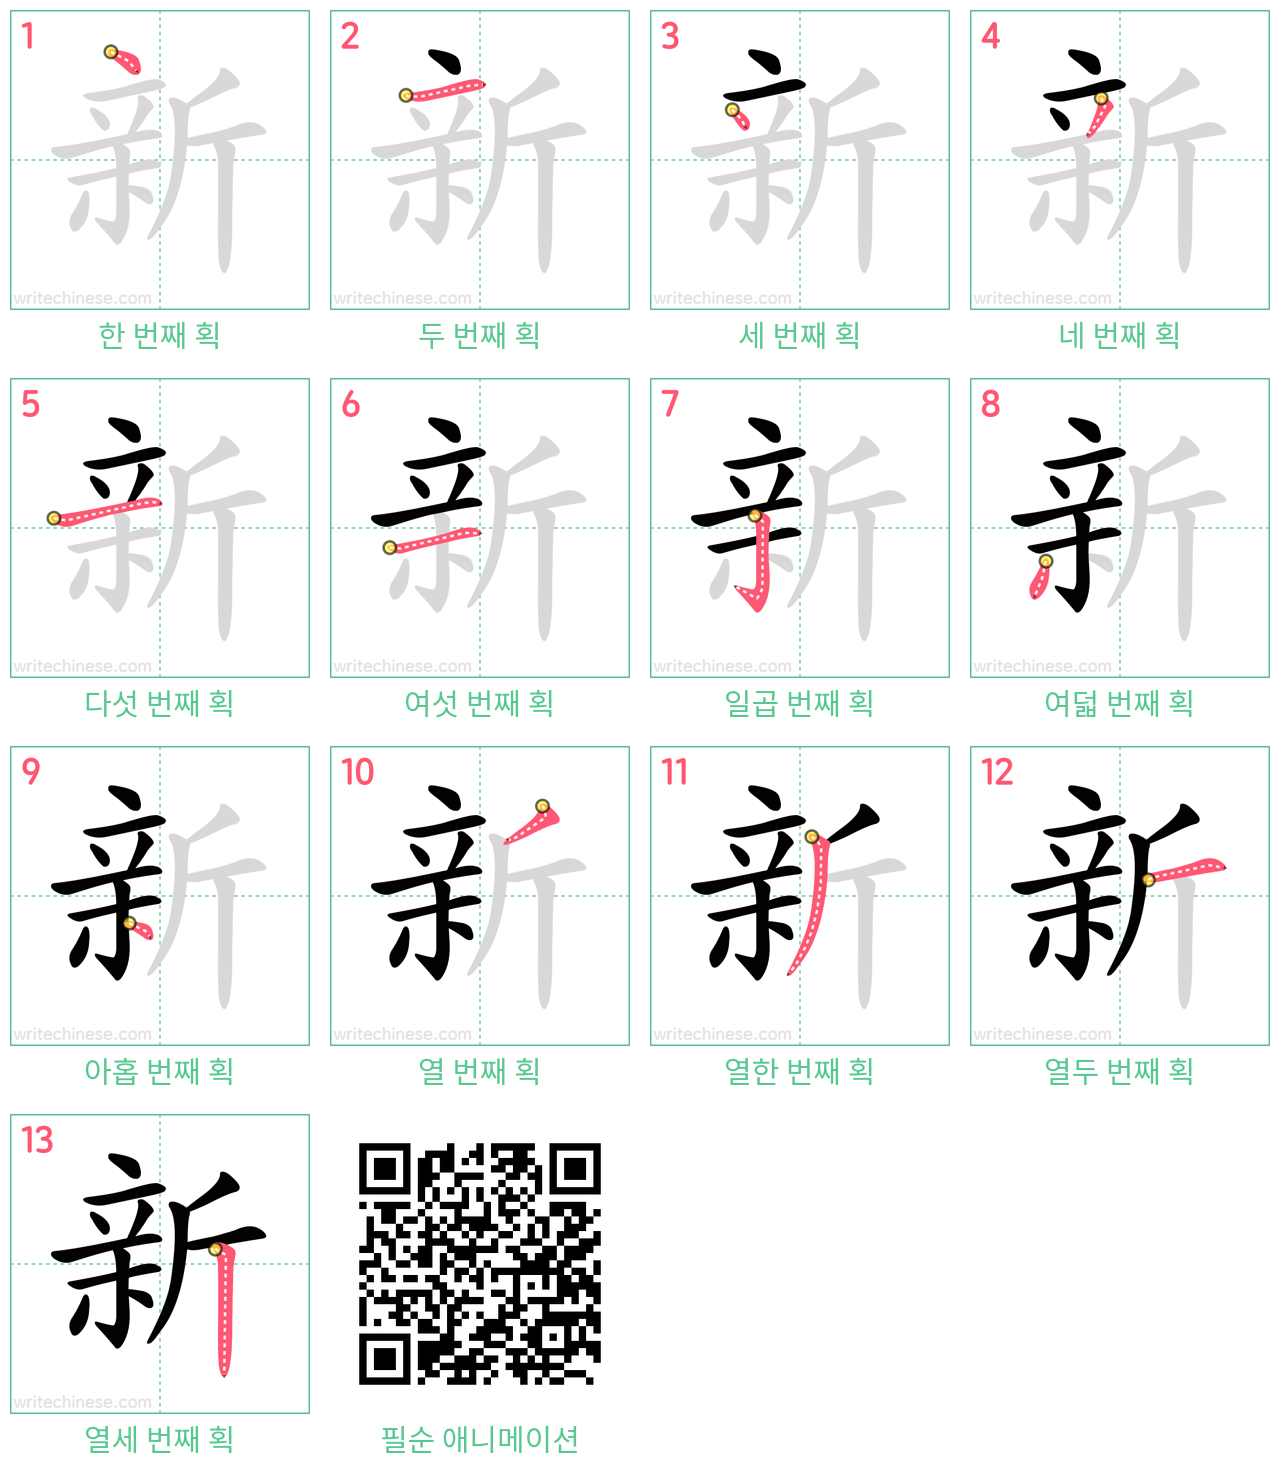 新 step-by-step stroke order diagrams